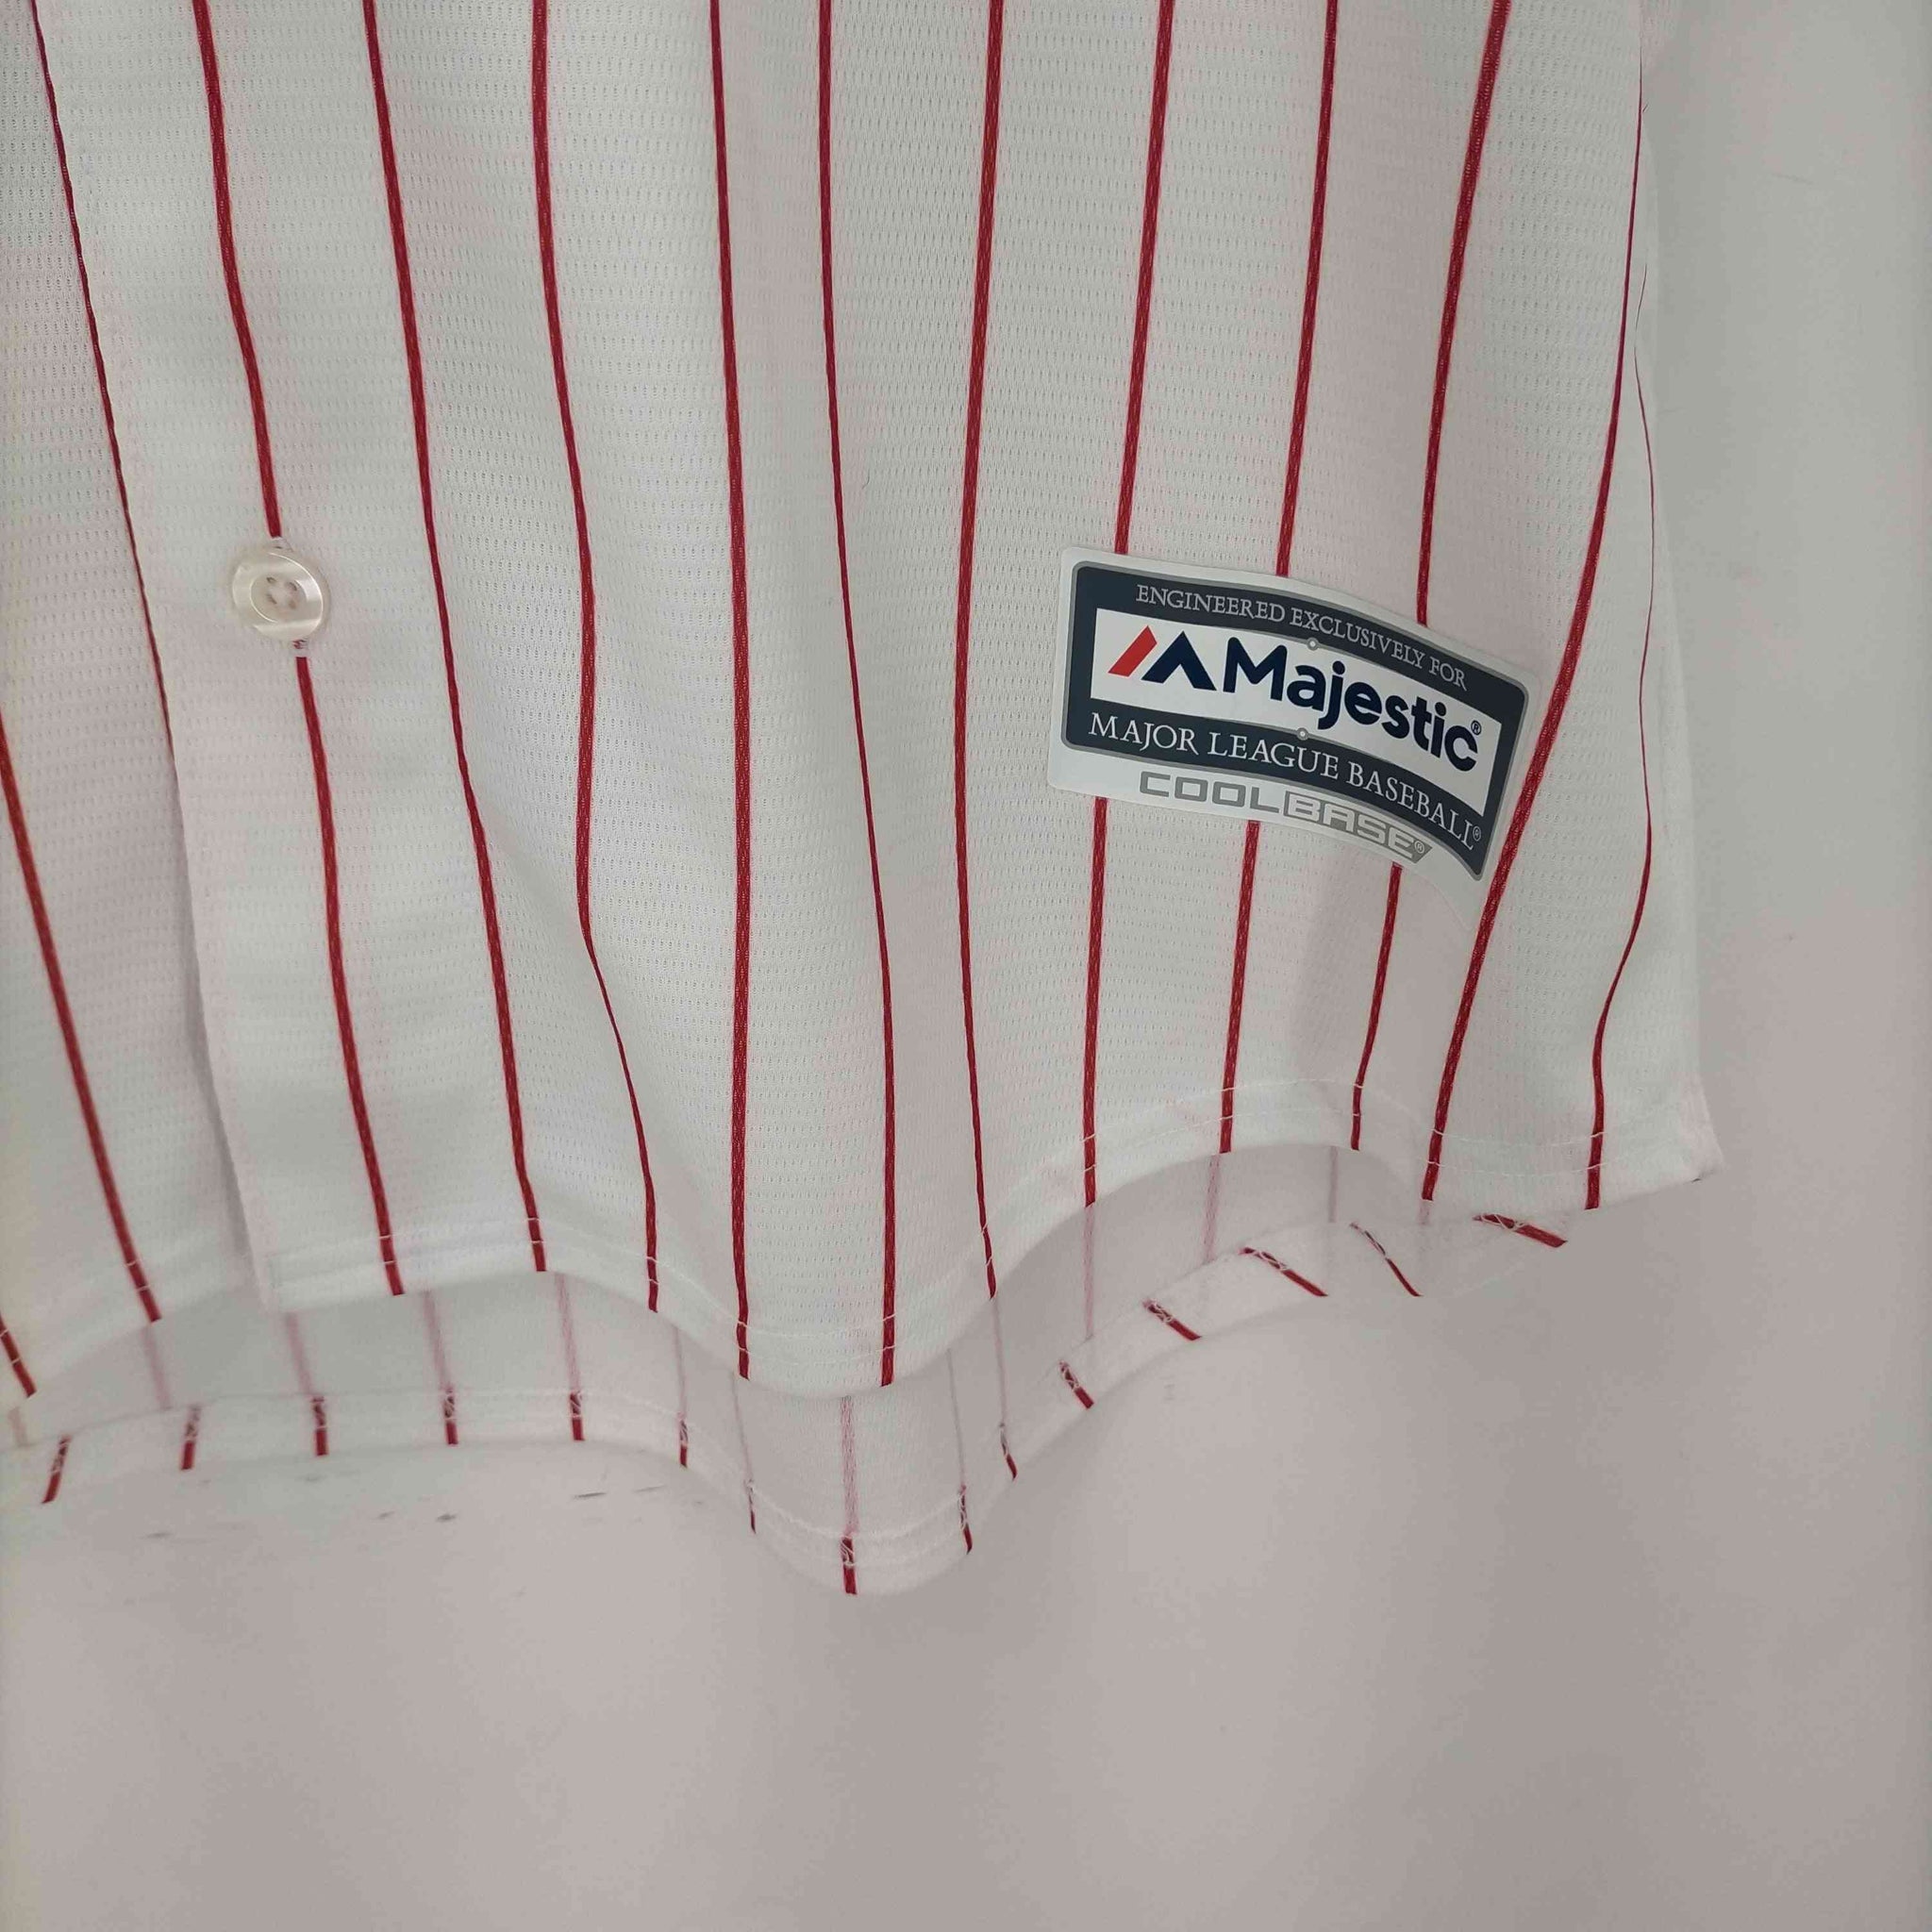 MAJESTIC(マジェスティック)MLB Phillies ベースボールシャツ